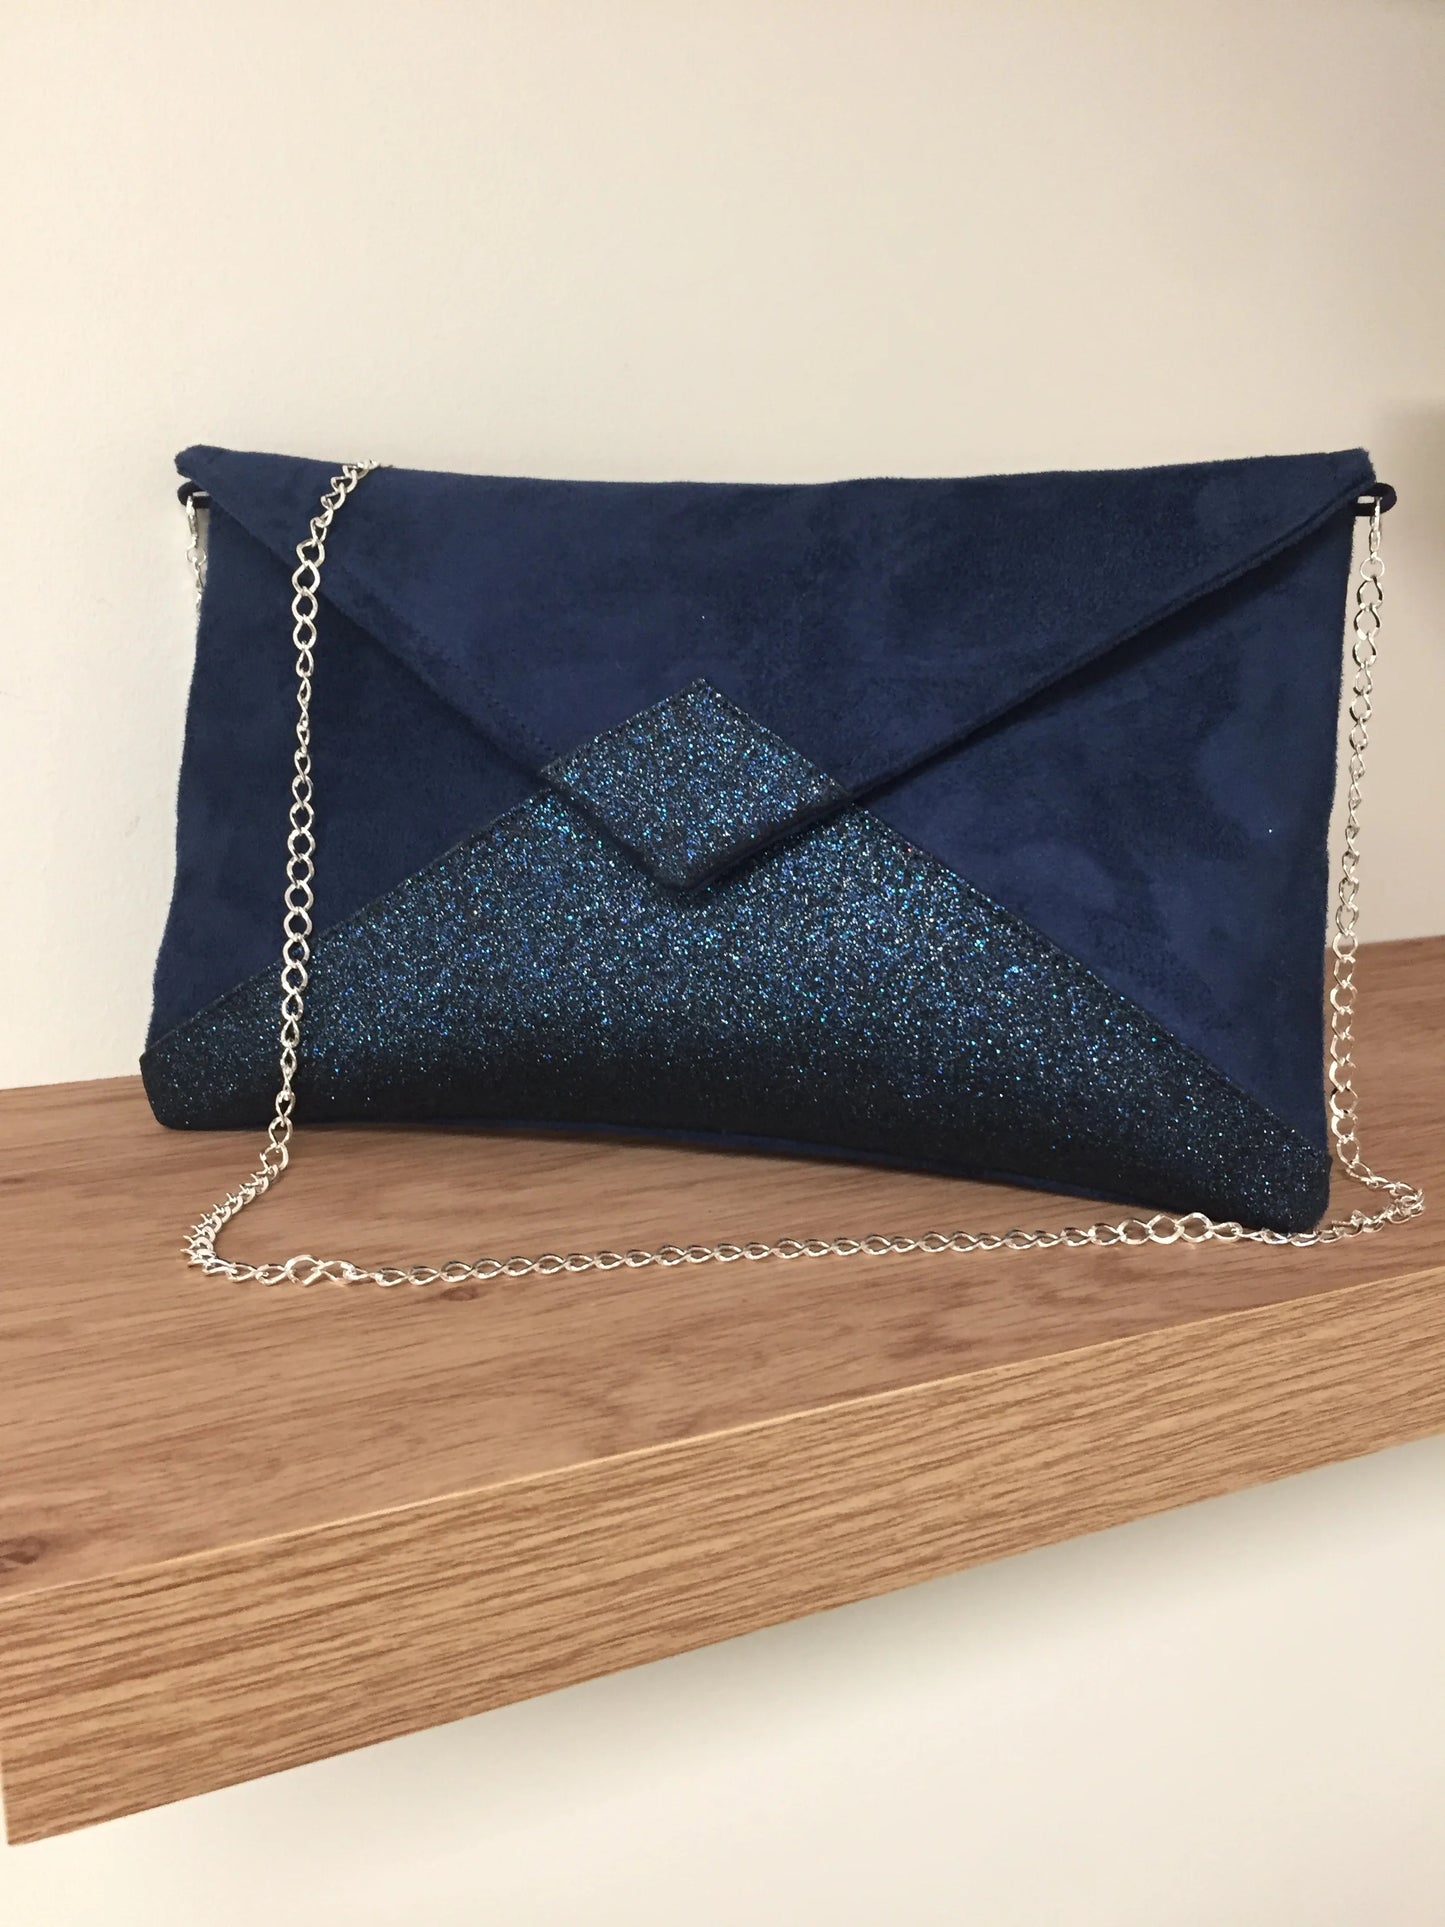 le sac pochette Isa bleu marine à paillettes, avec chainette amovible